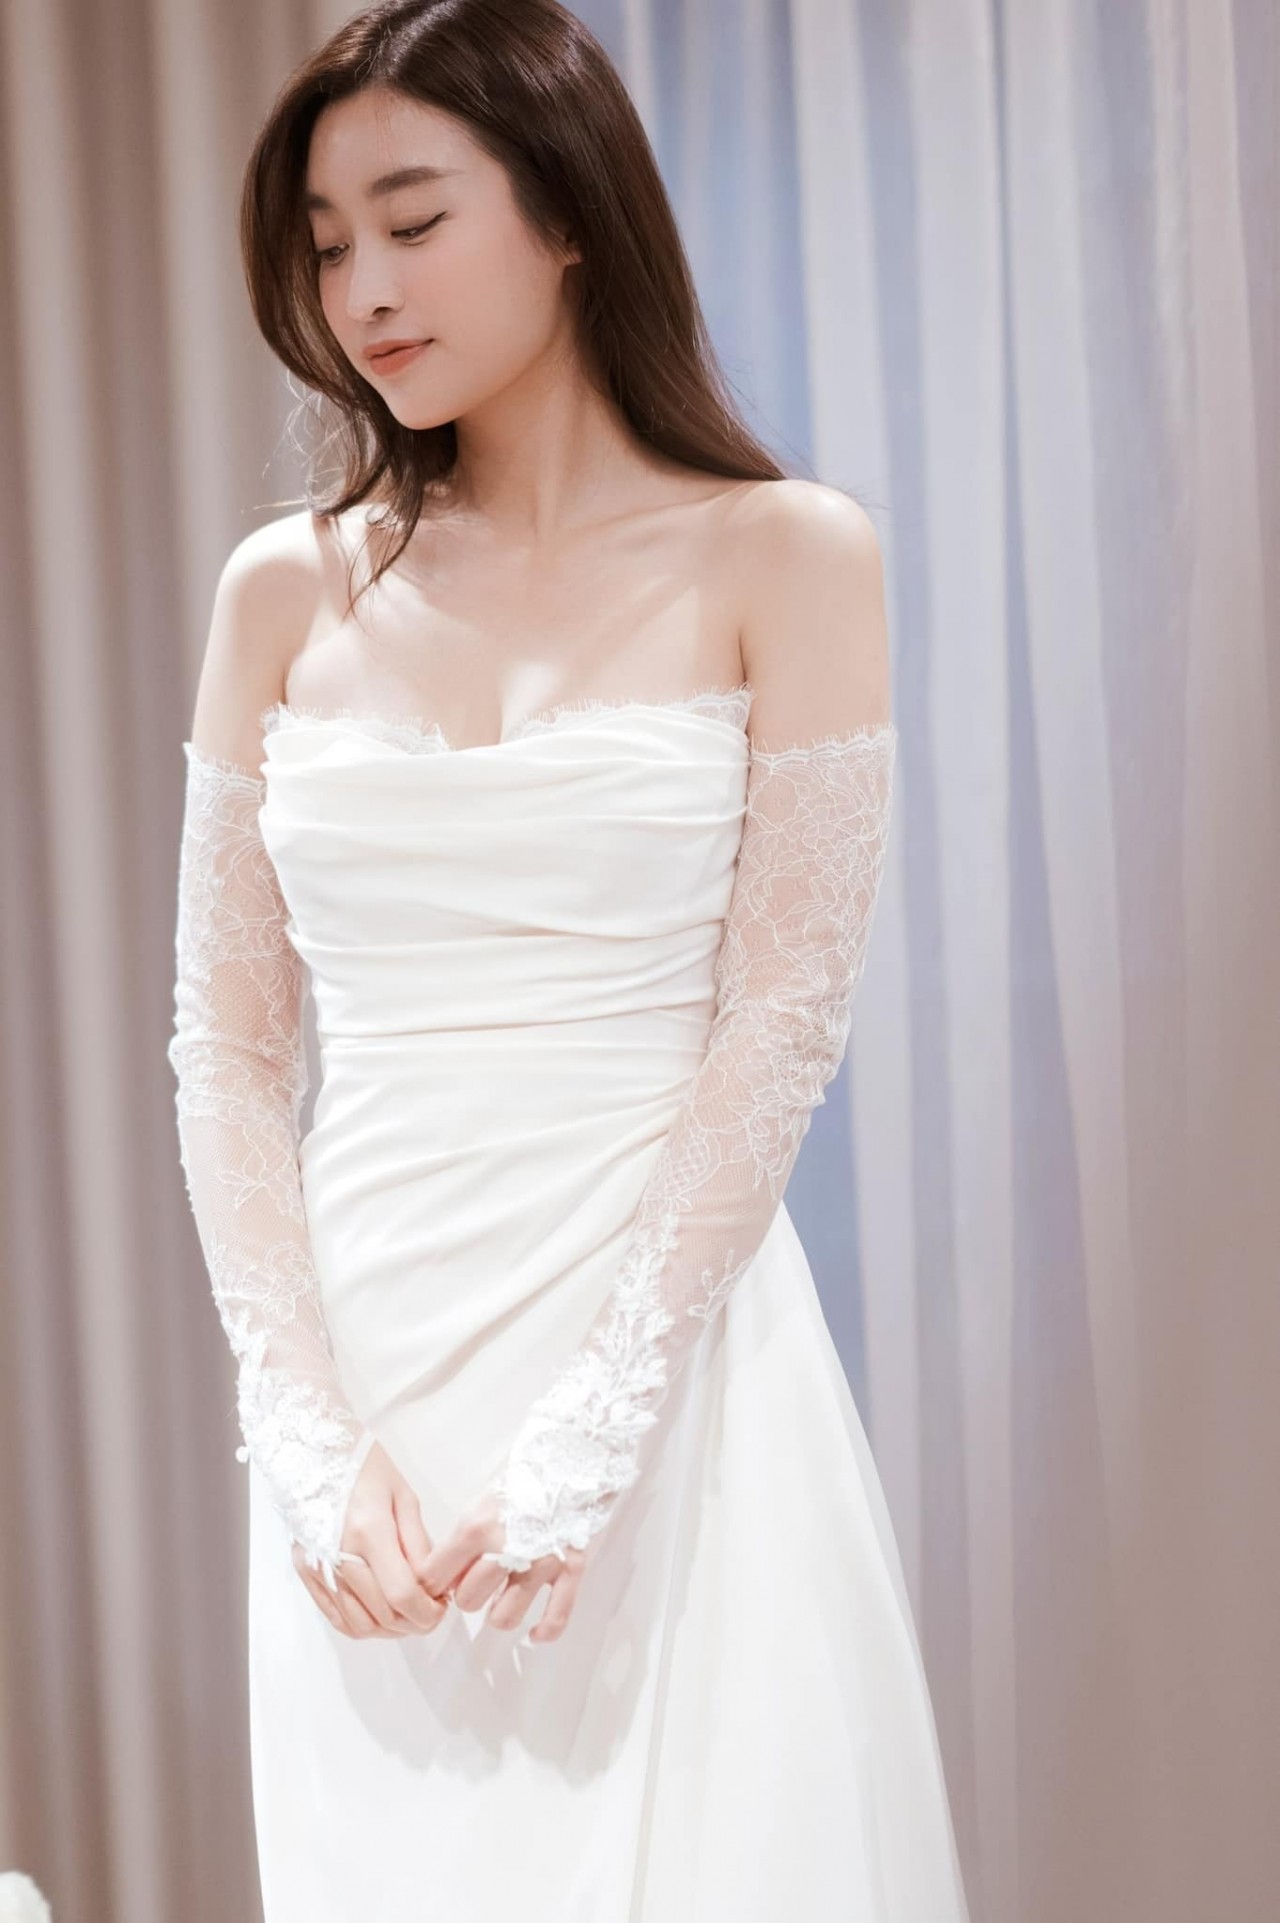 Hoa hậu Đỗ Mỹ Linh rạng ngời trong ngày trọng đại cùng 5 bộ váy cưới tinh tế